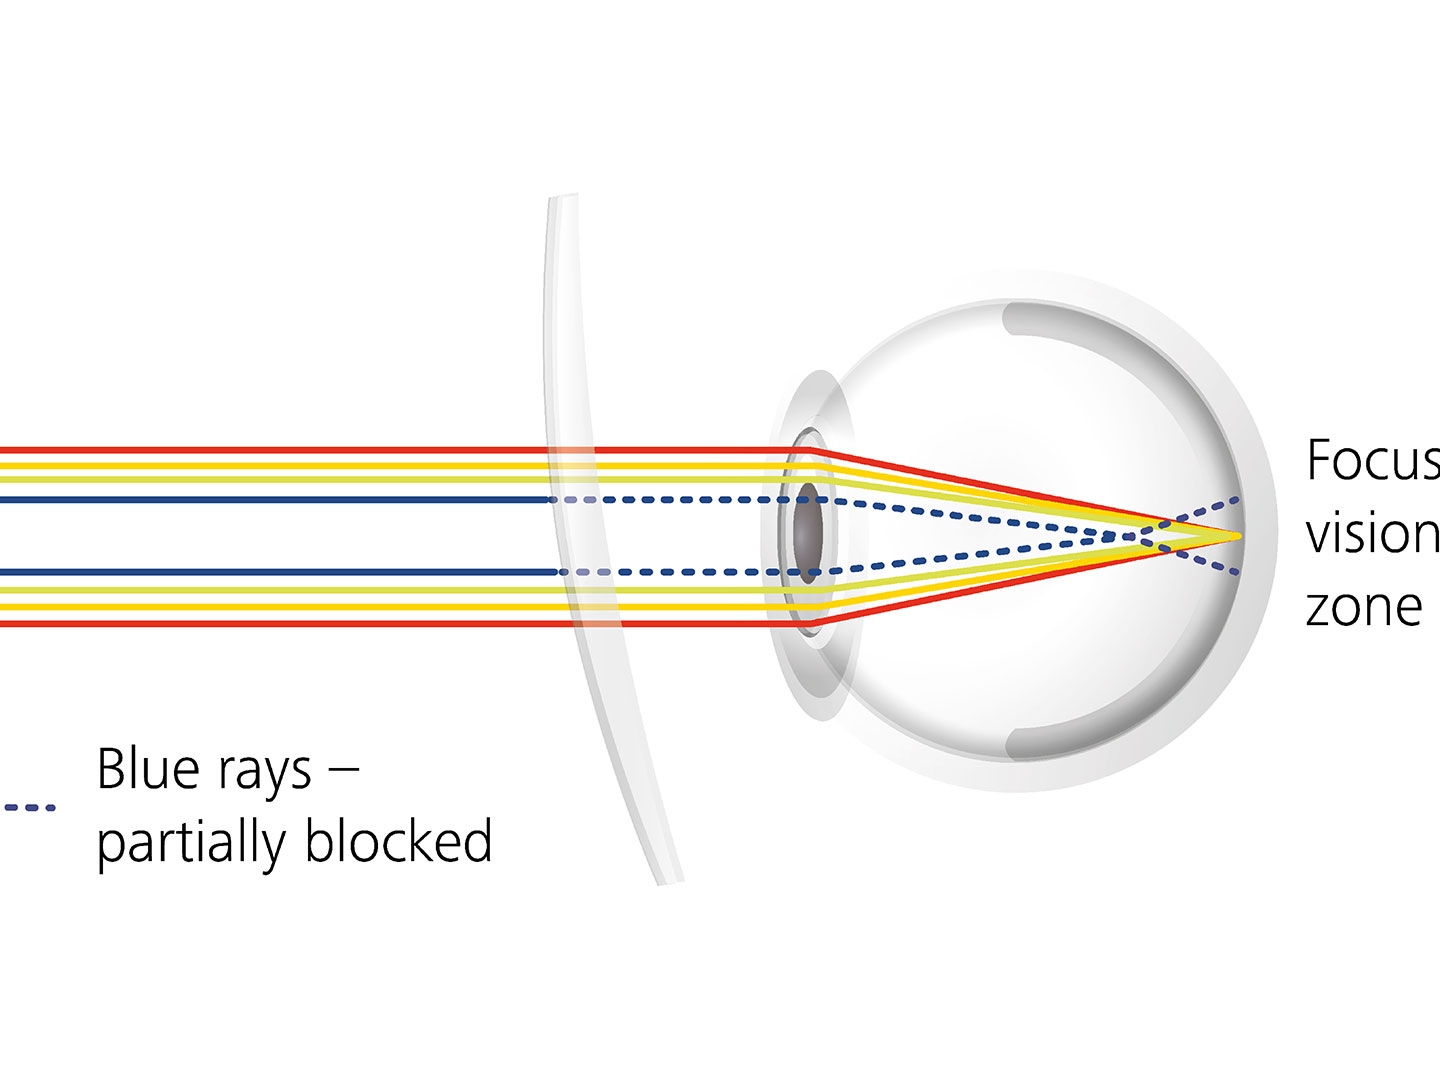 Wizualizacja tego, jak powłoki soczewek mogą redukować odblaski poprzez częściowe blokowanie niebieskiego promieniowania 